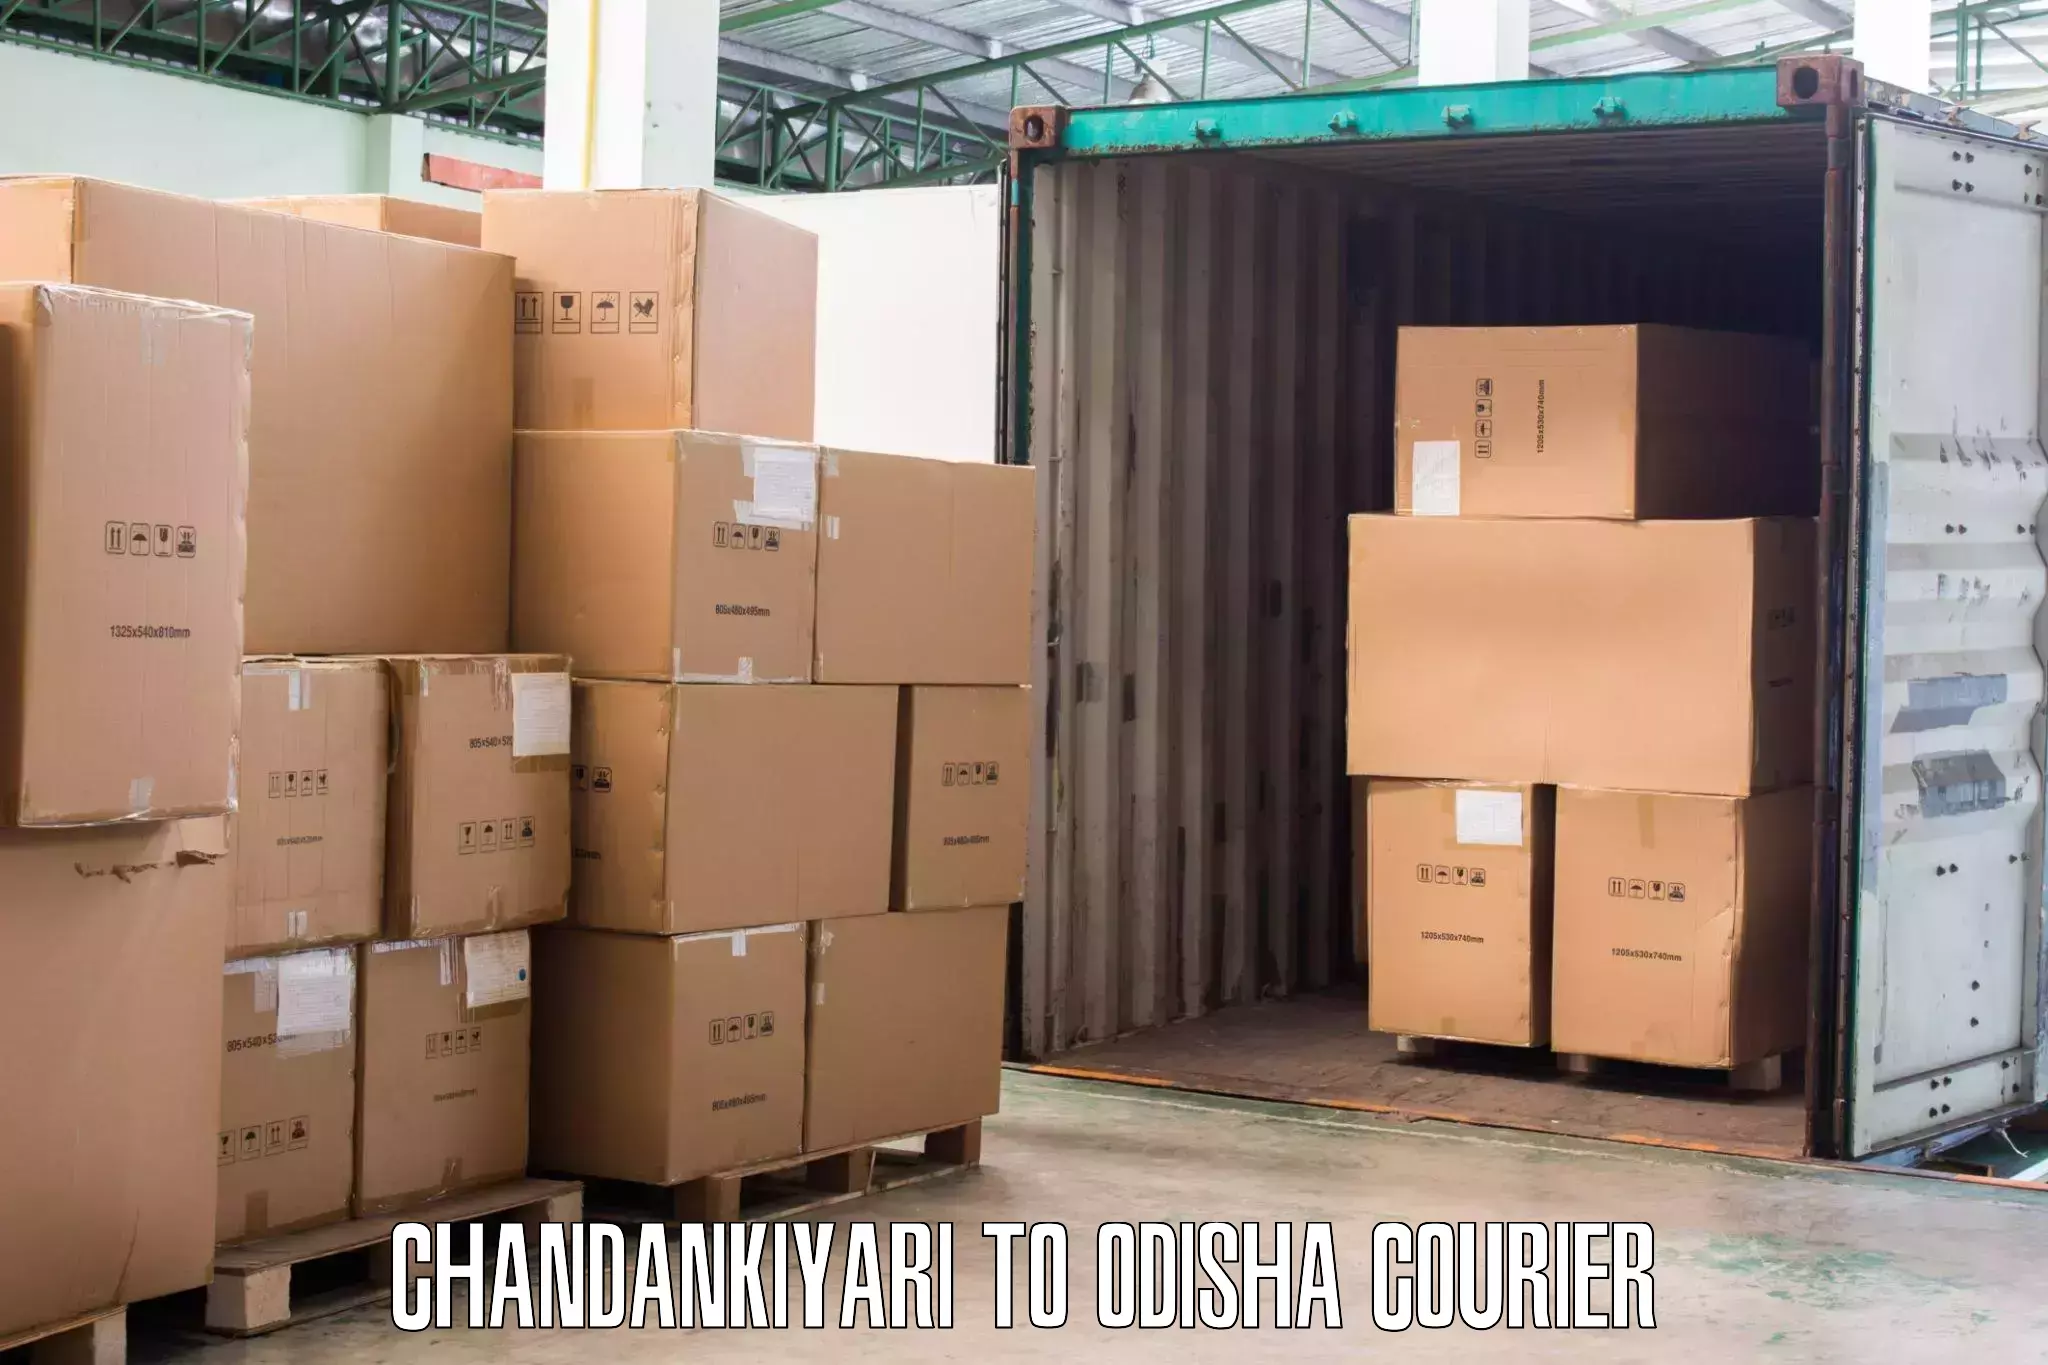 Furniture moving assistance Chandankiyari to Jashipur